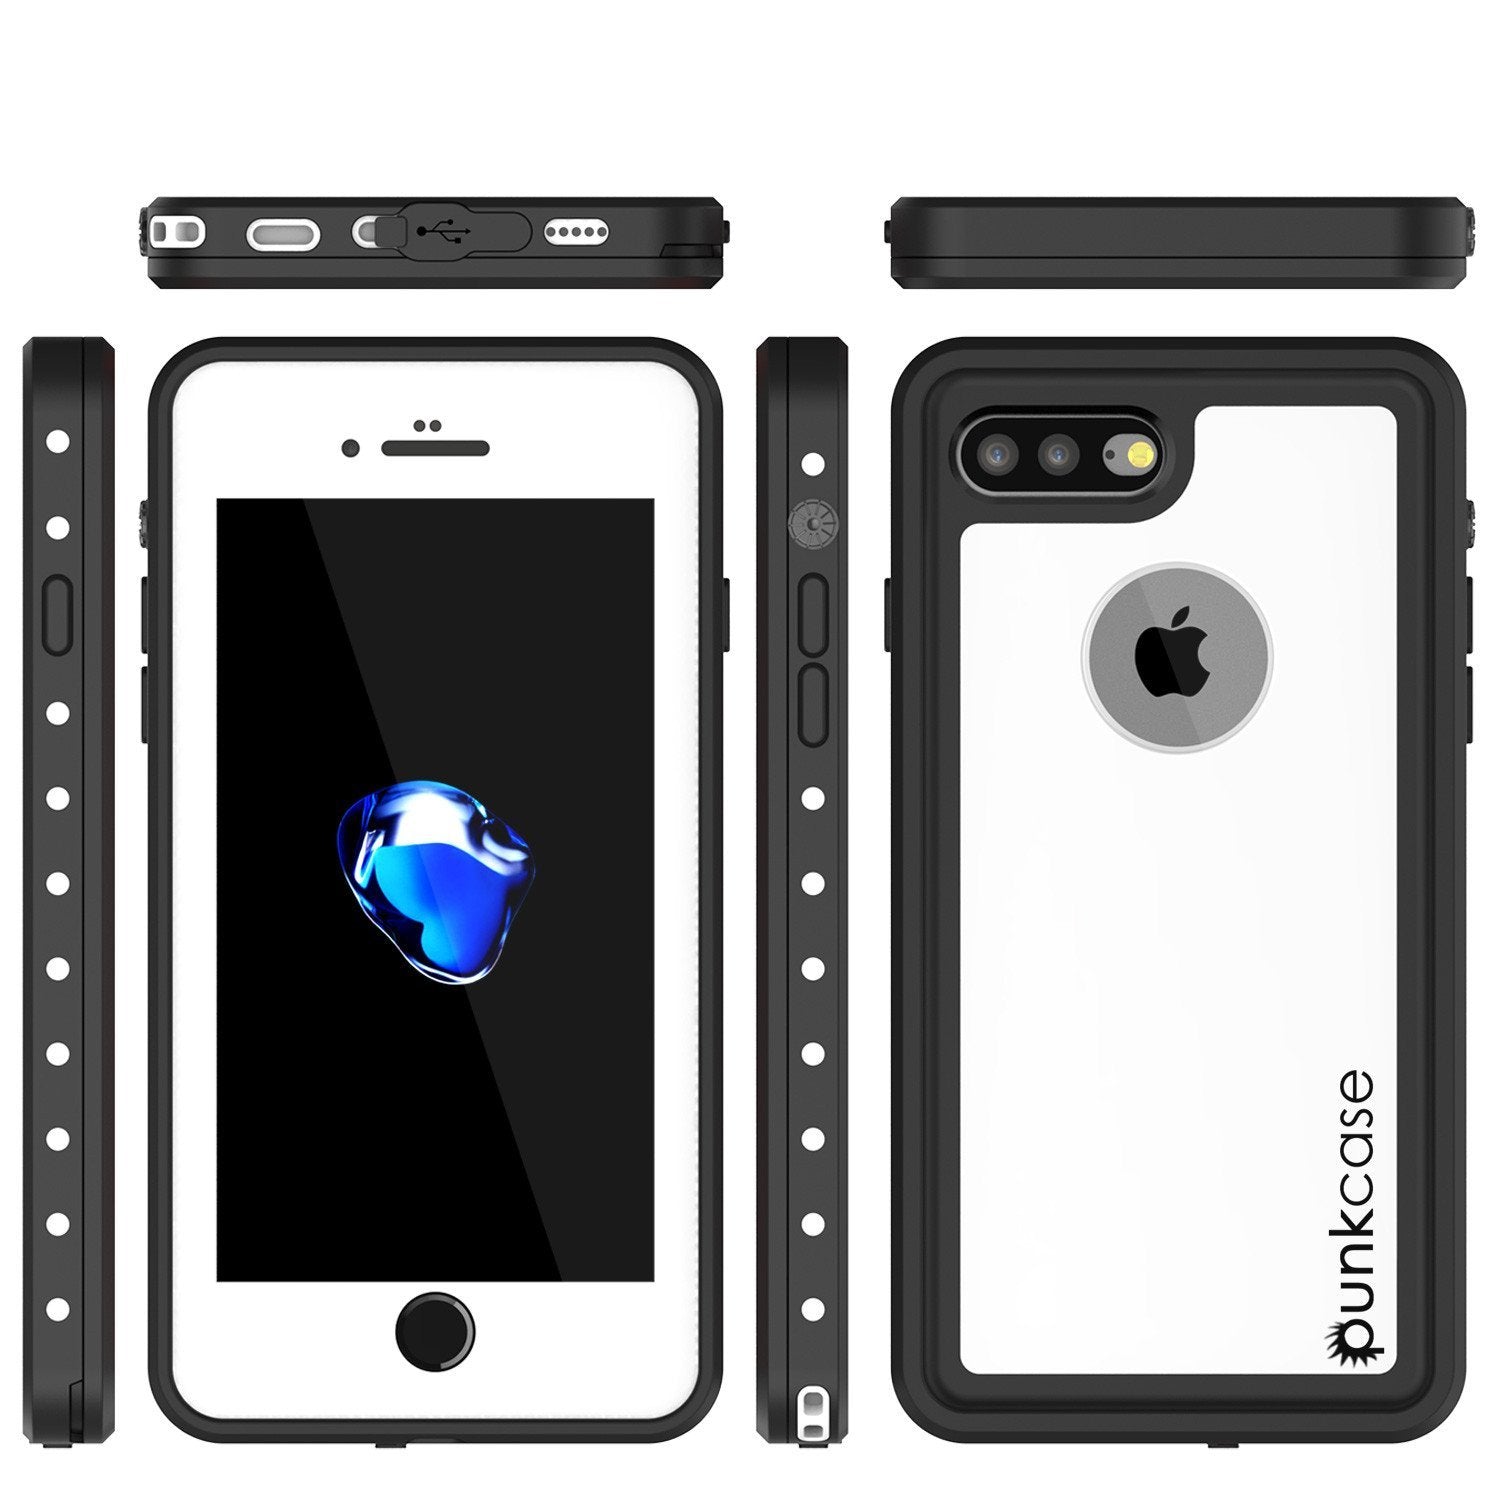 iPhone 8+ Plus Waterproof IP68 Case, Punkcase [White] [StudStar Series] [Slim Fit] [Dirtproof]